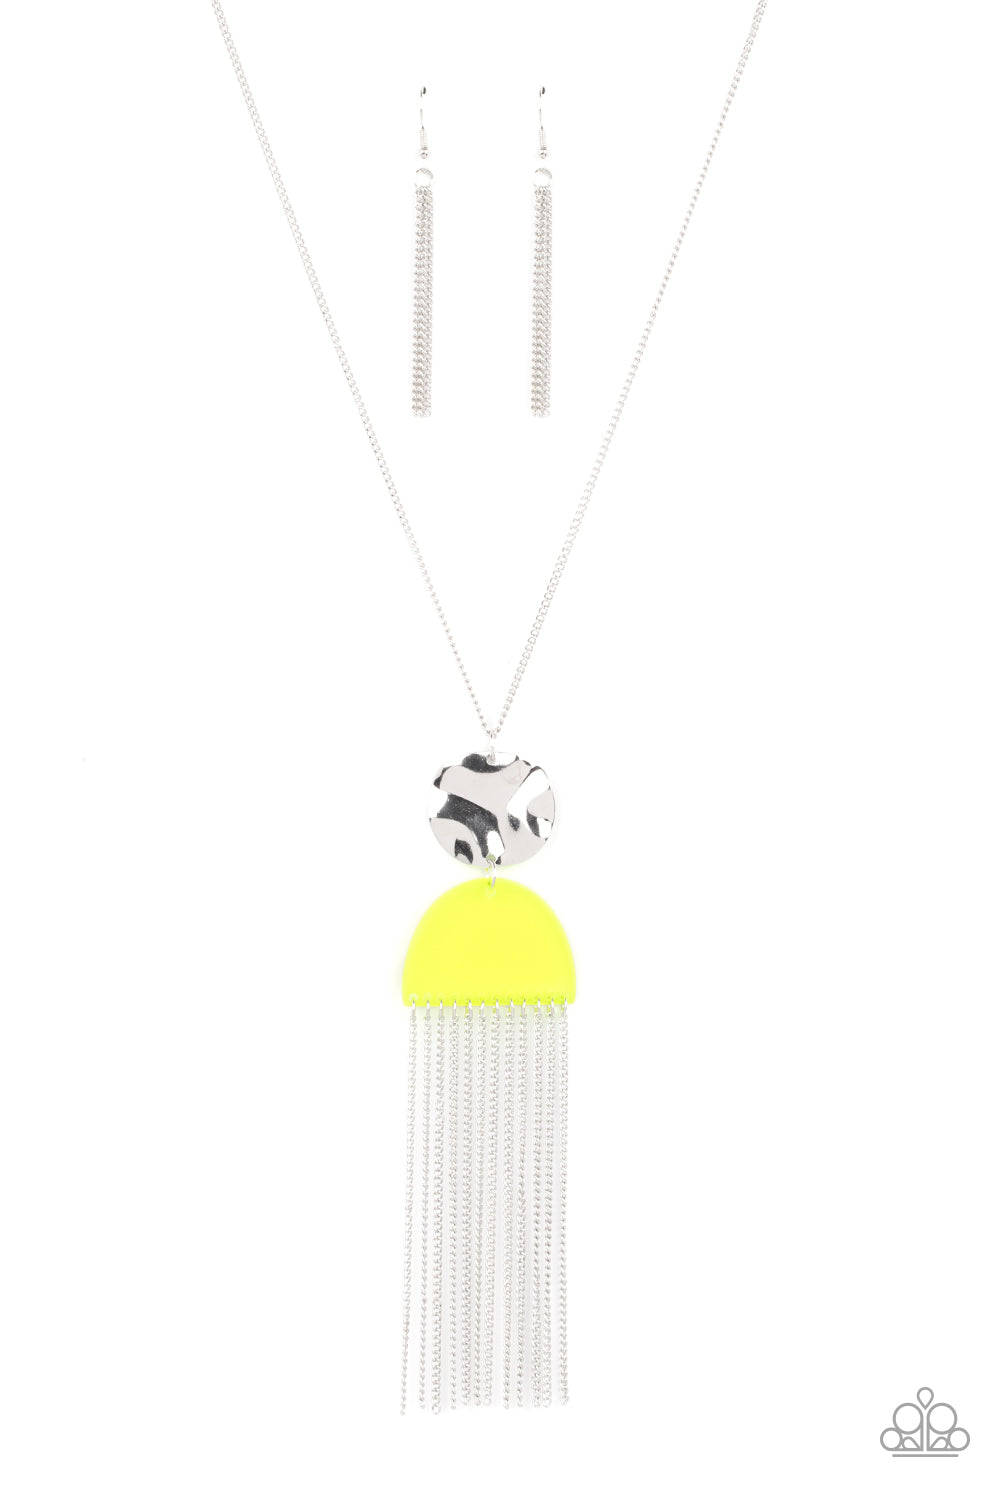 Color Me Neon - Yellow Necklace Set - Princess Glam Shop